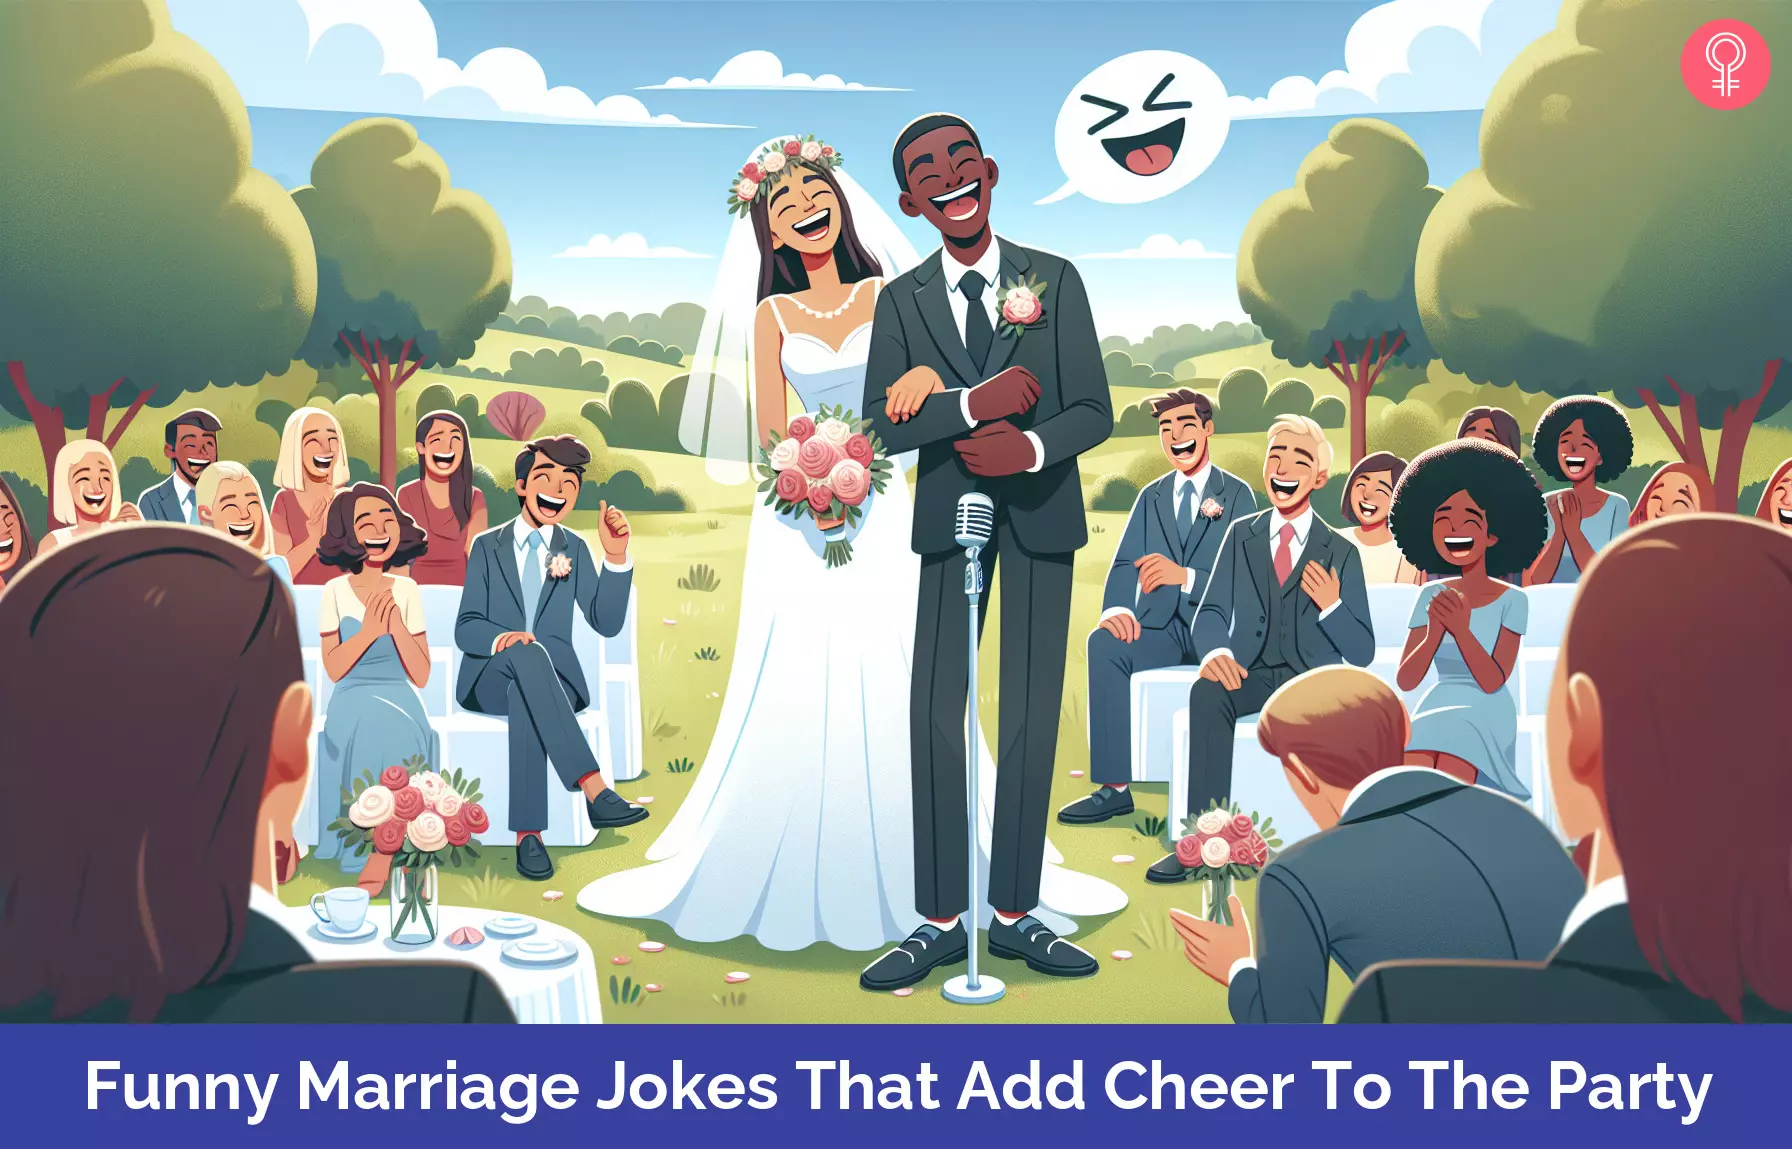 Marriage jokes_illustration